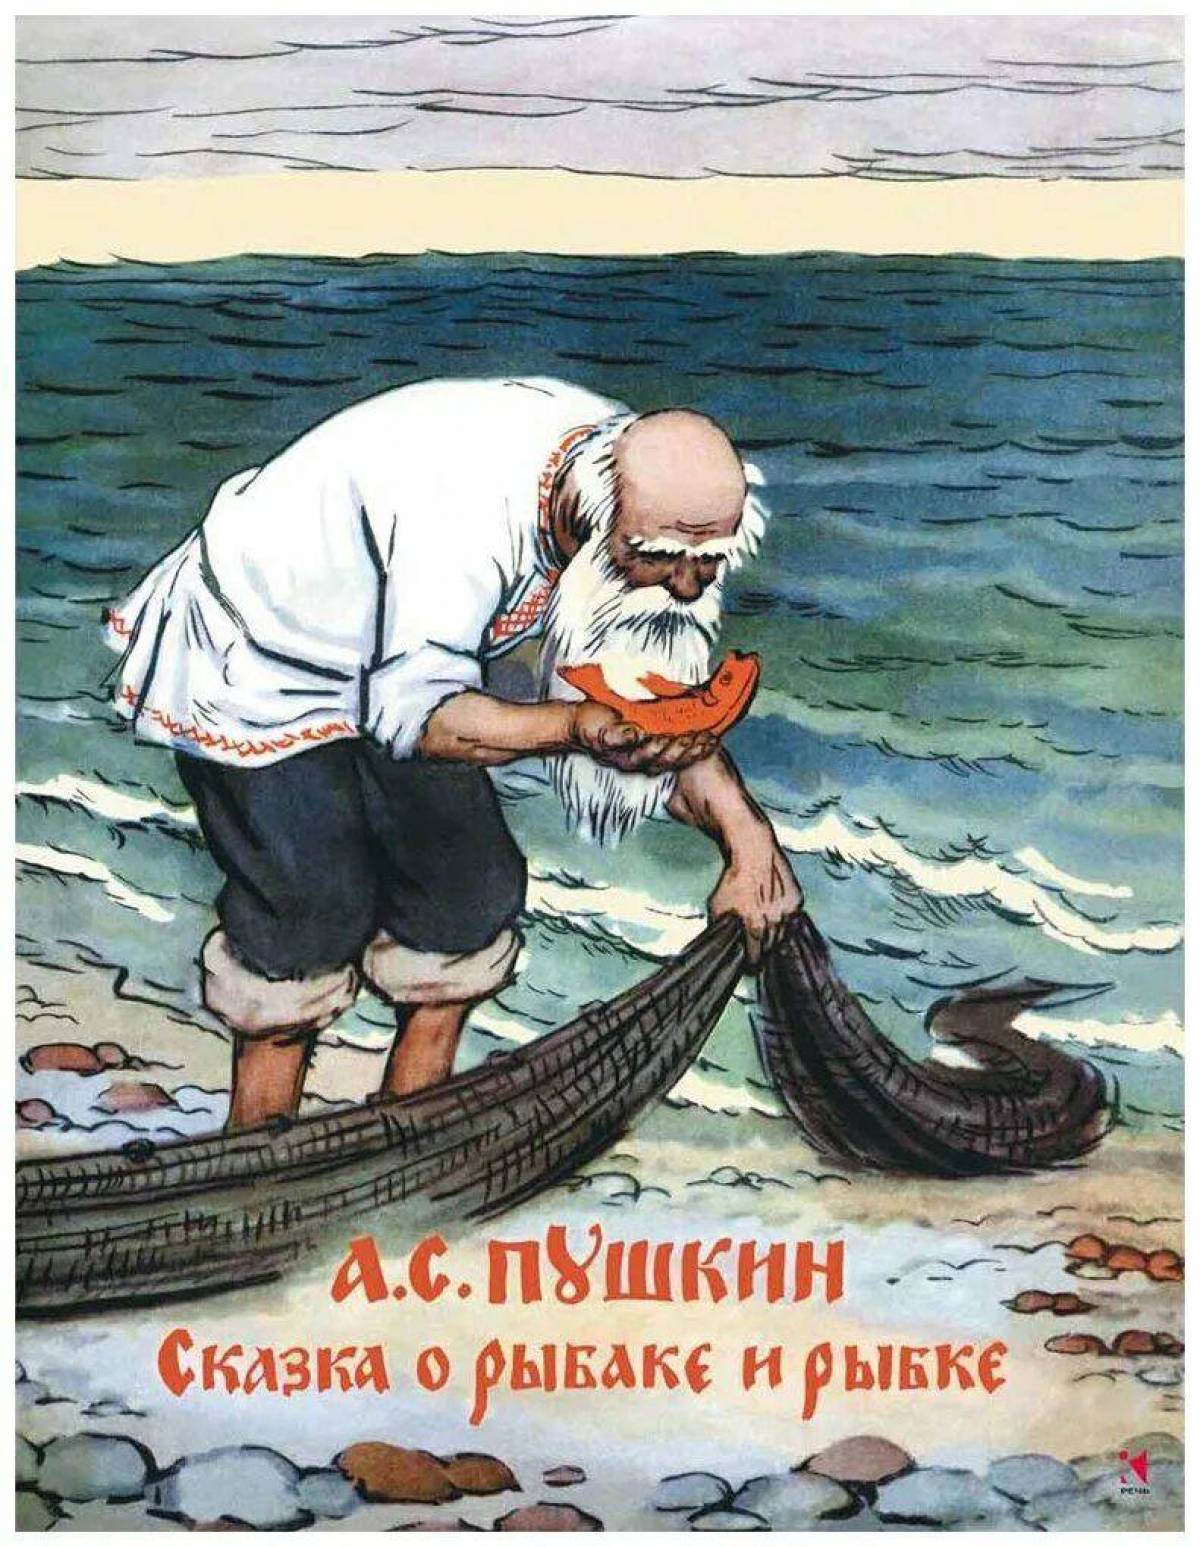 Иллюстрация к сказке о рыбаке и рыбке #30